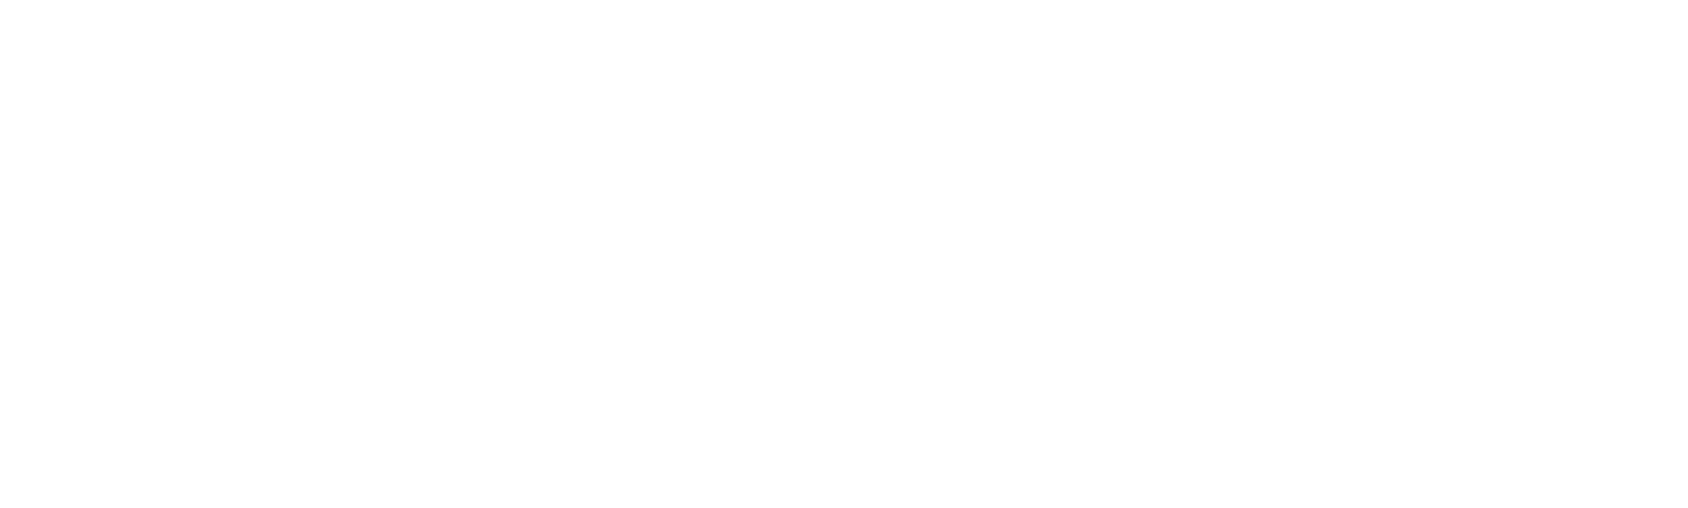 the metropolitan logo gay